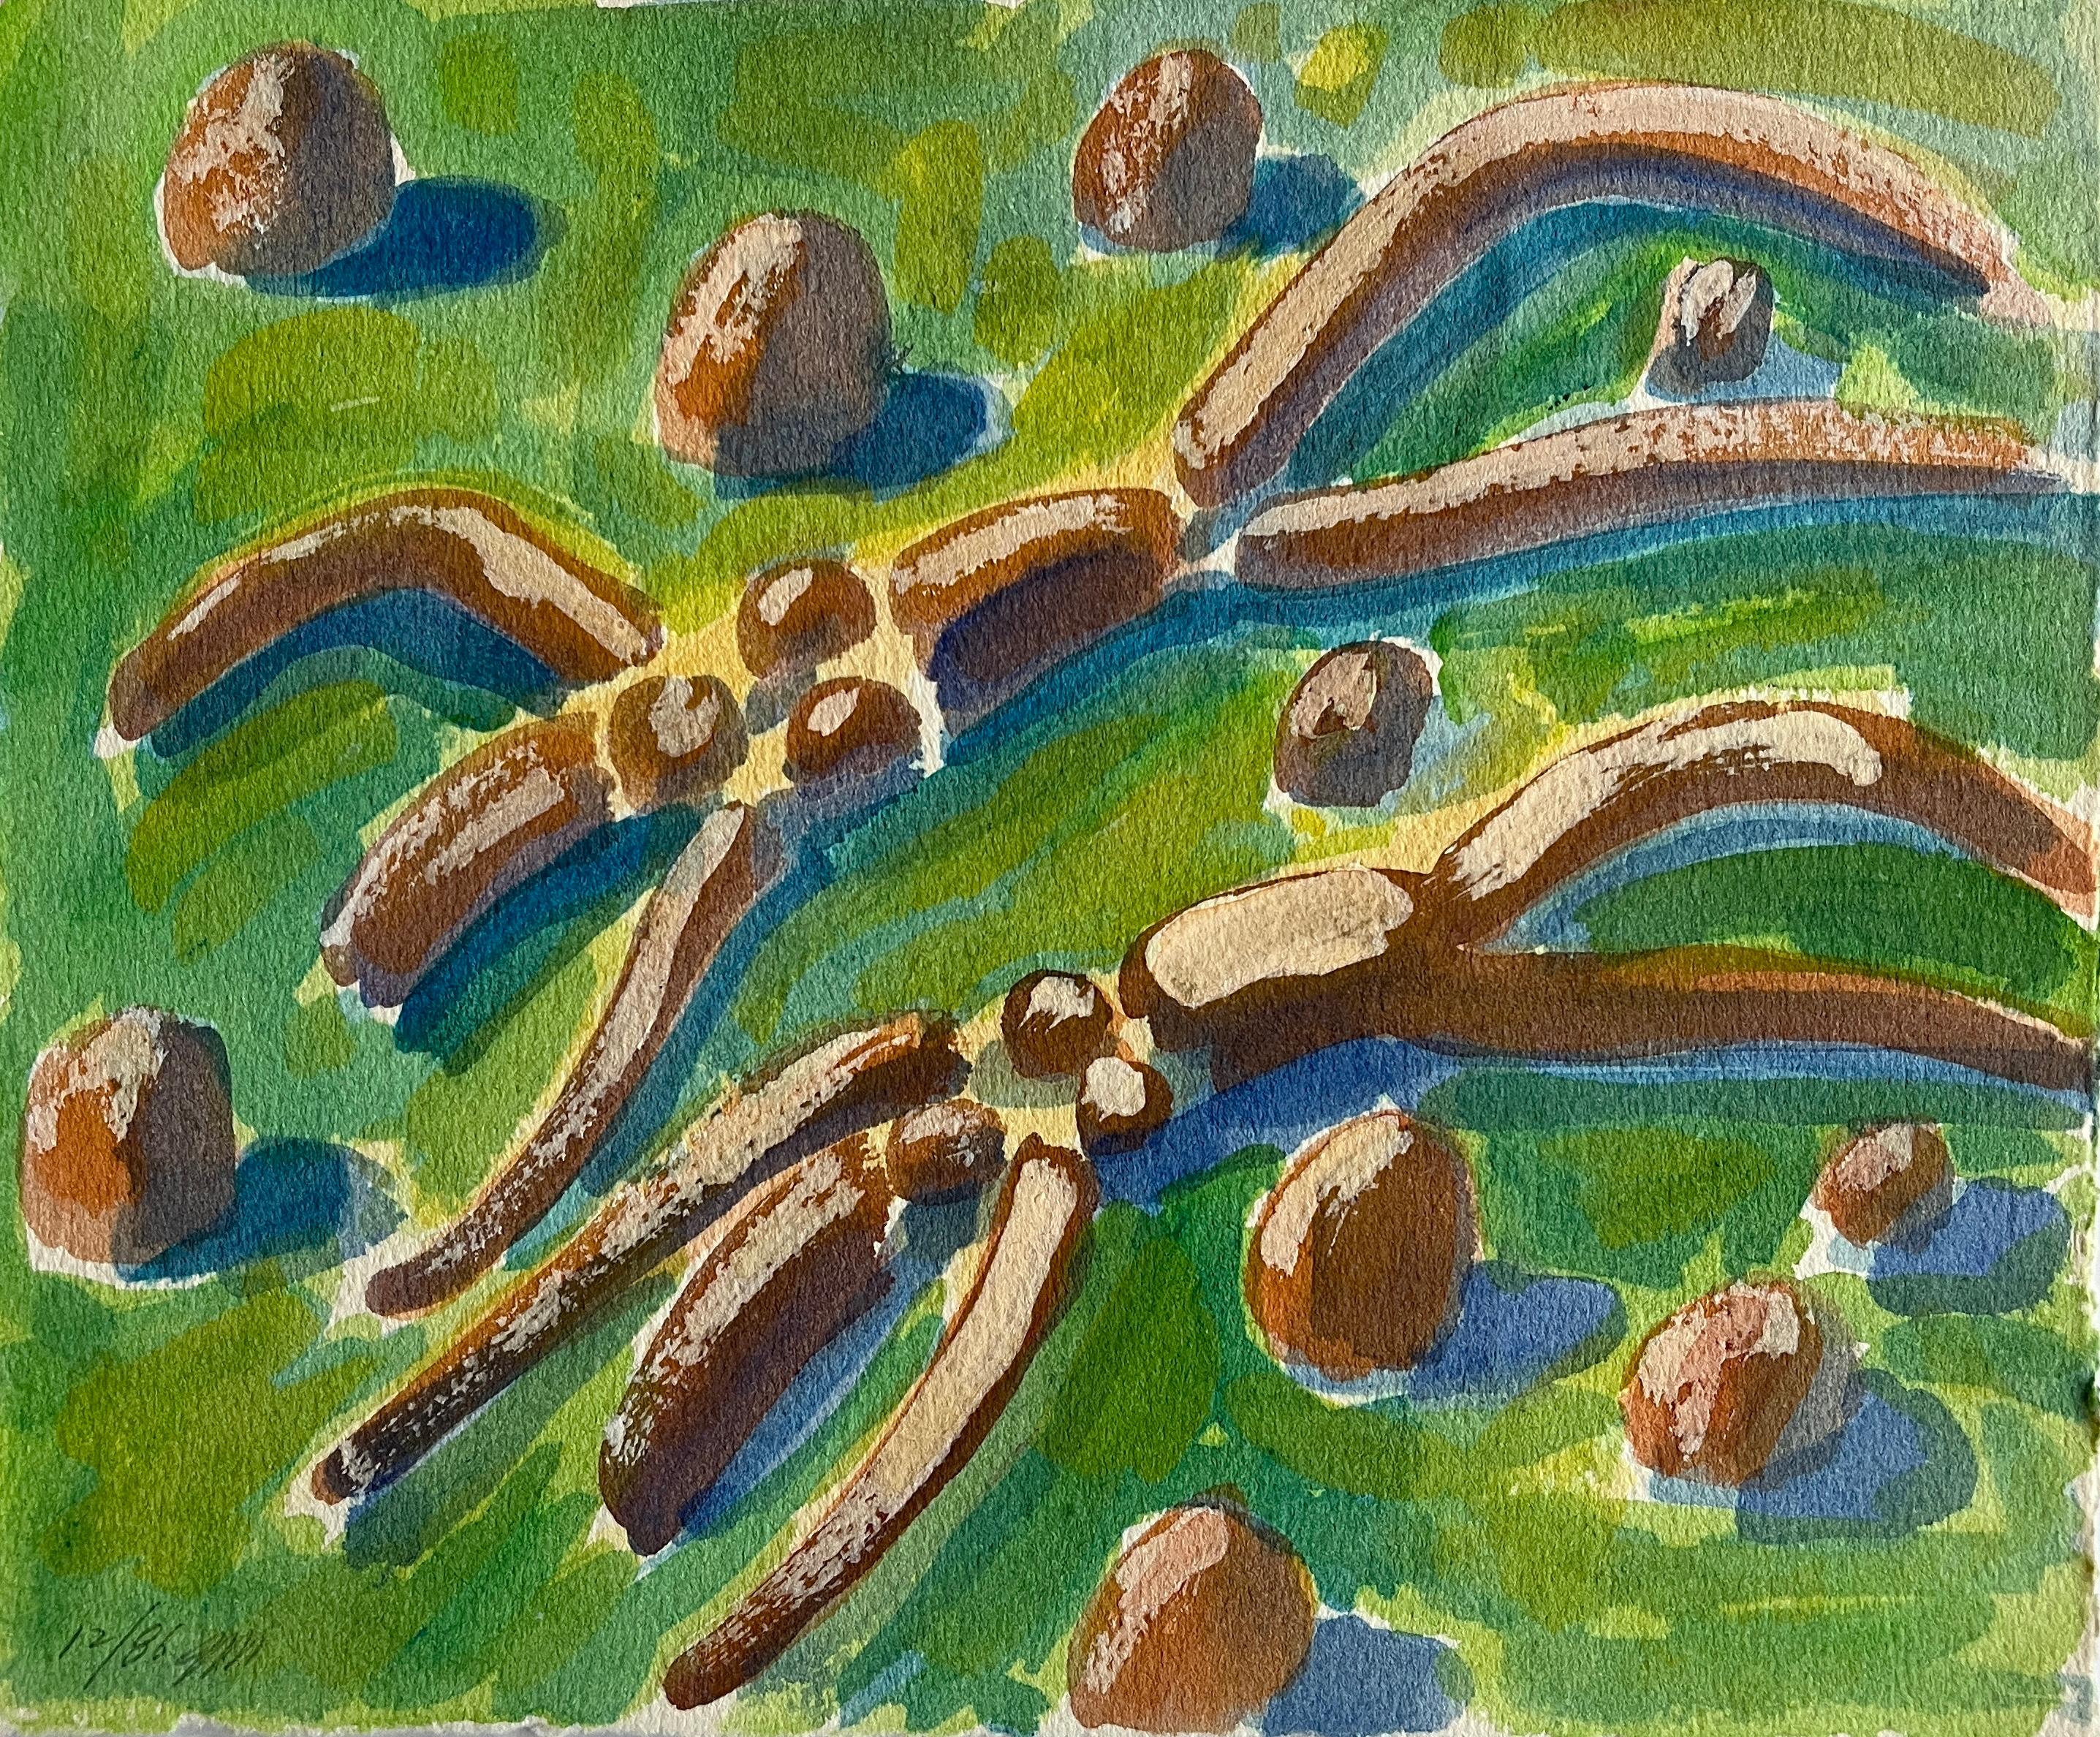 Jack Hooper
"Figuren, die mit Schatten liegen"
Dezember 1986
Farbe auf Papier
9,5 "x8" ungerahmt
Signiert und datiert mit Bleistift unten links

In diesem modernistischen Meisterwerk von Jack Hooper ruhen zwei abstrakte Figuren auf einer grünen